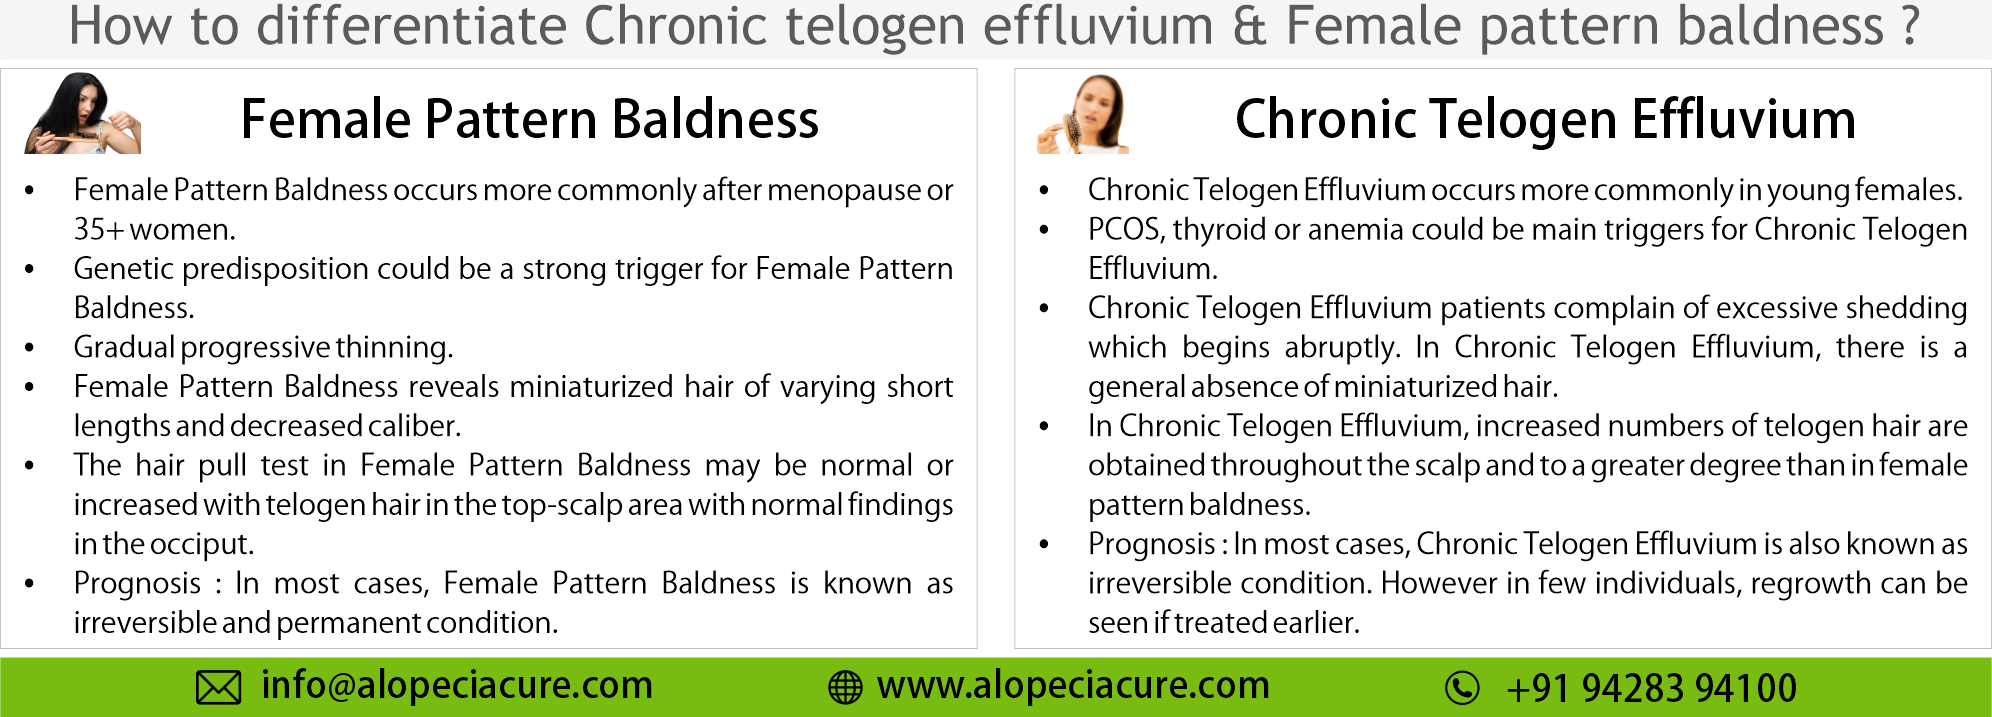 female pattern baldness or chronic telogen effluvium